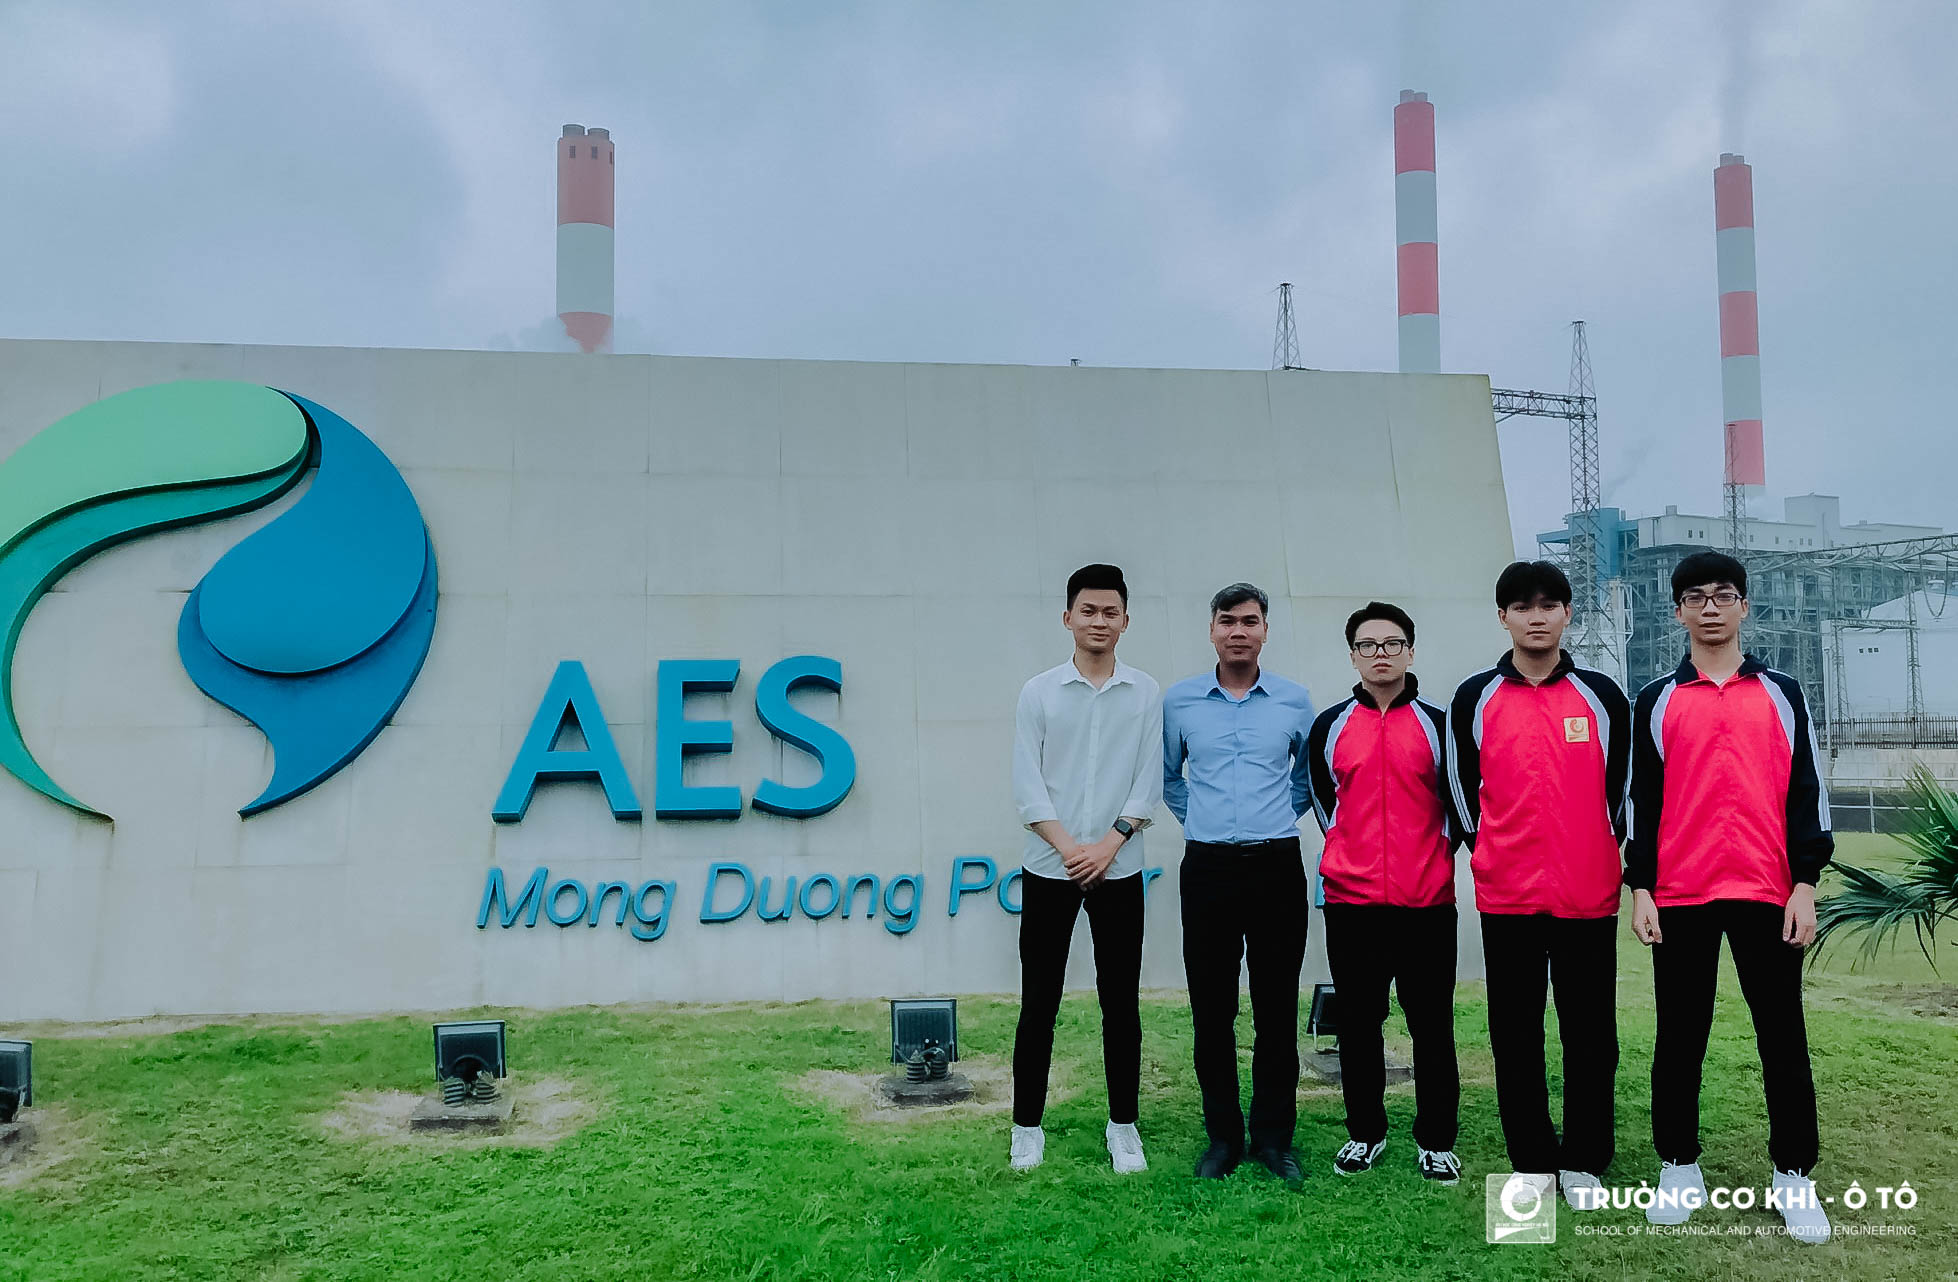 06 sinh viên Đại học Công nghiệp Hà Nội vinh dự nhận học bổng Năng lượng tương lai